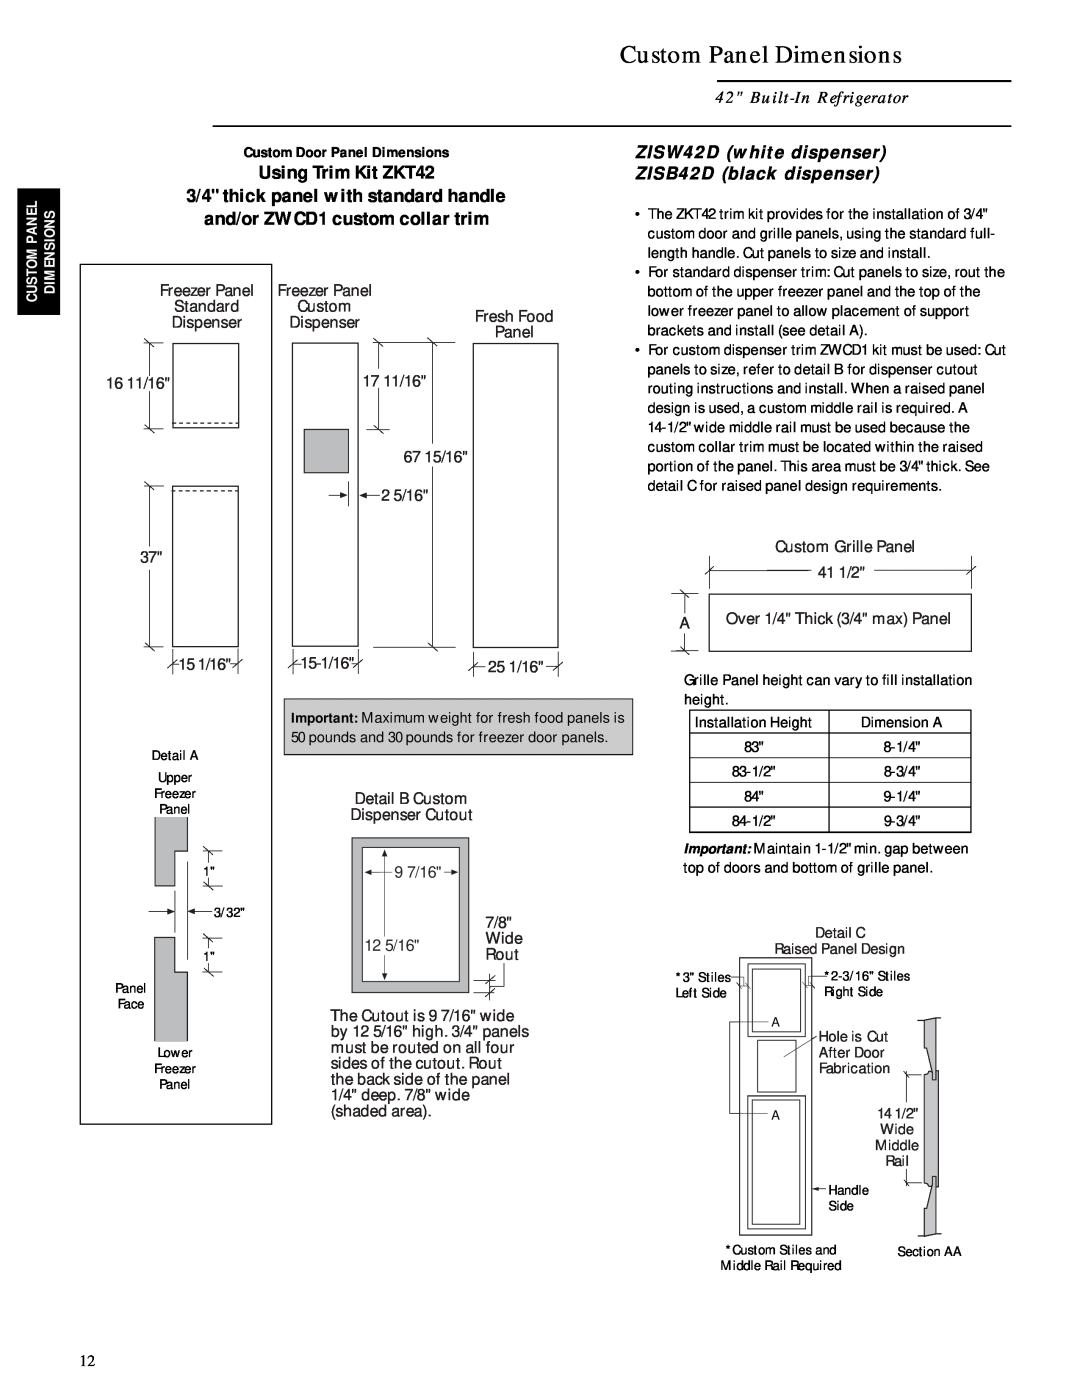 GE Monogram ZIS42N, ZISB42D Custom Panel Dimensions, Built-In Refrigerator, ZISW42D white dispenser, Using Trim Kit ZKT42 